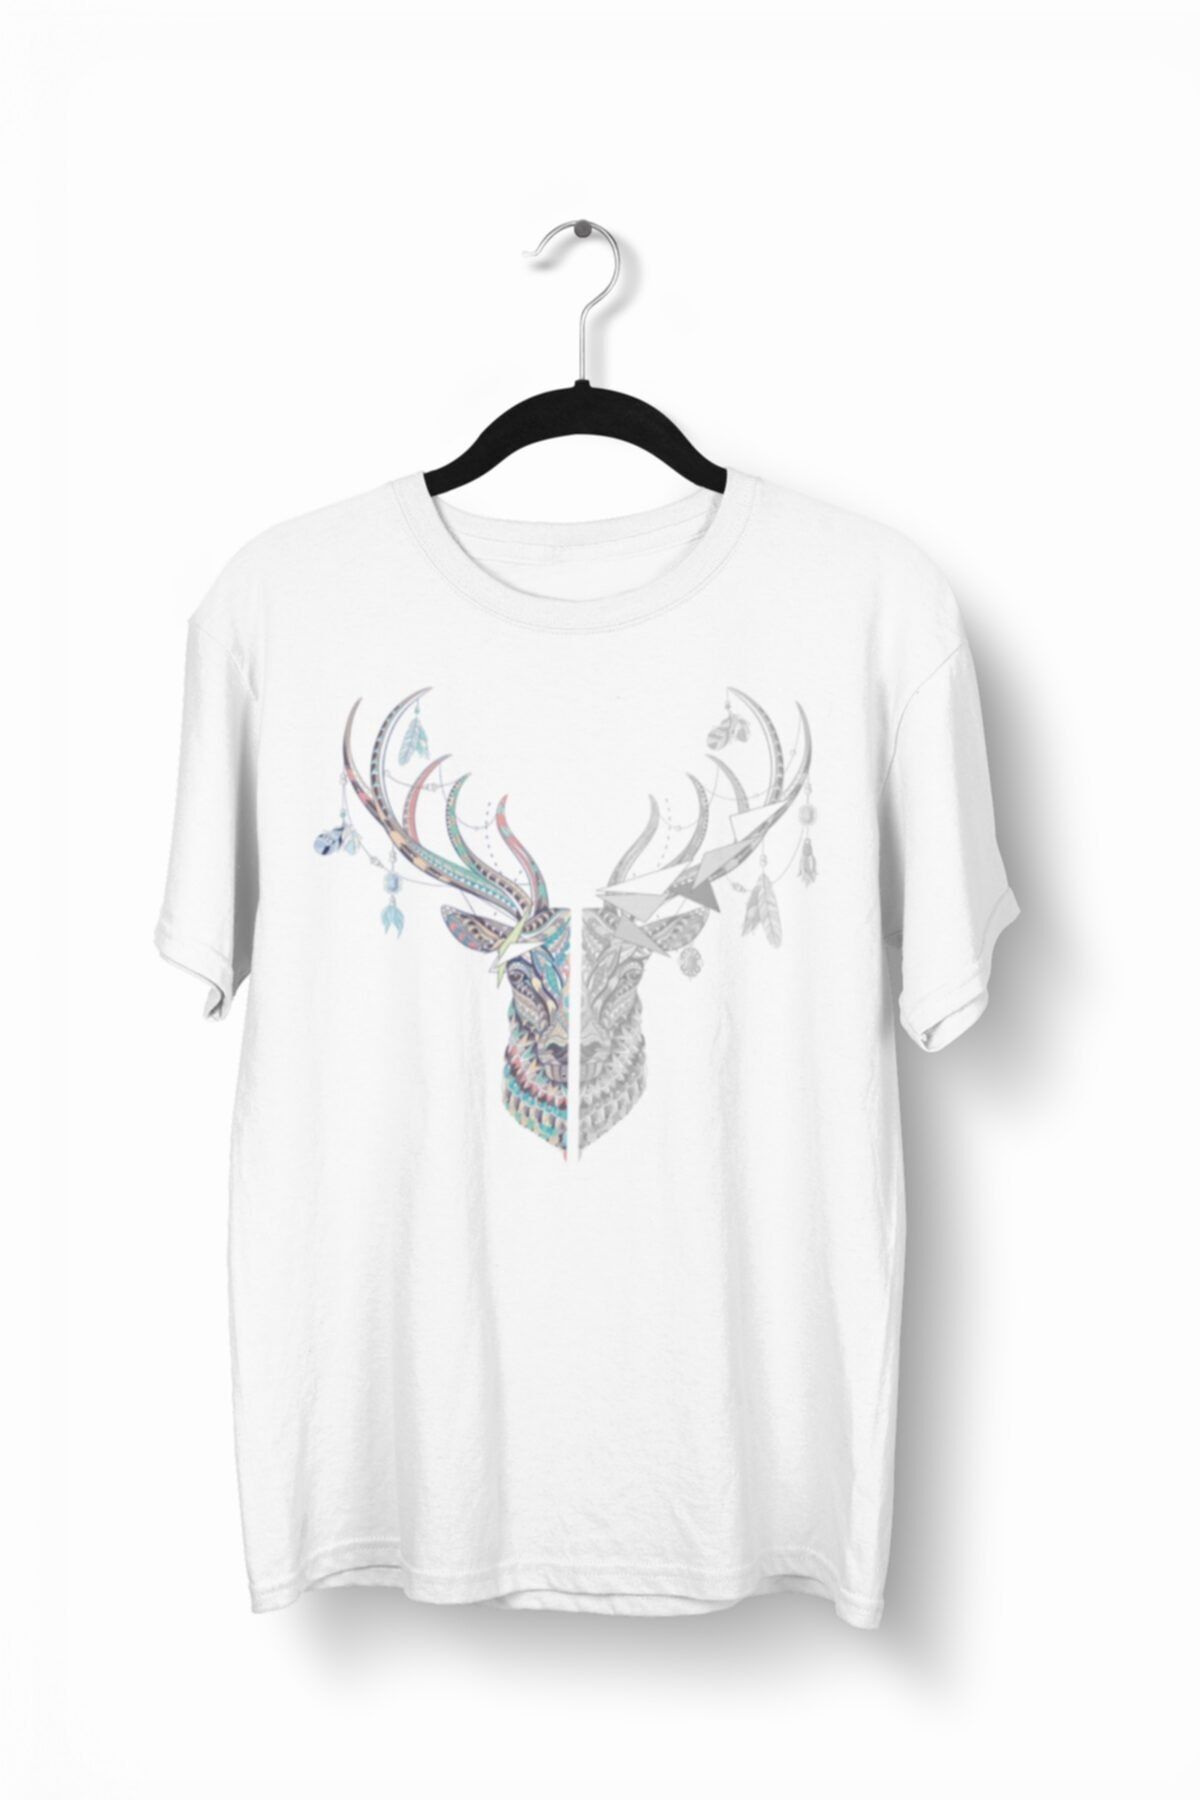 Tshigo Dark Magic Deer Baskılı Erkek T-Shirt - 2019TS180